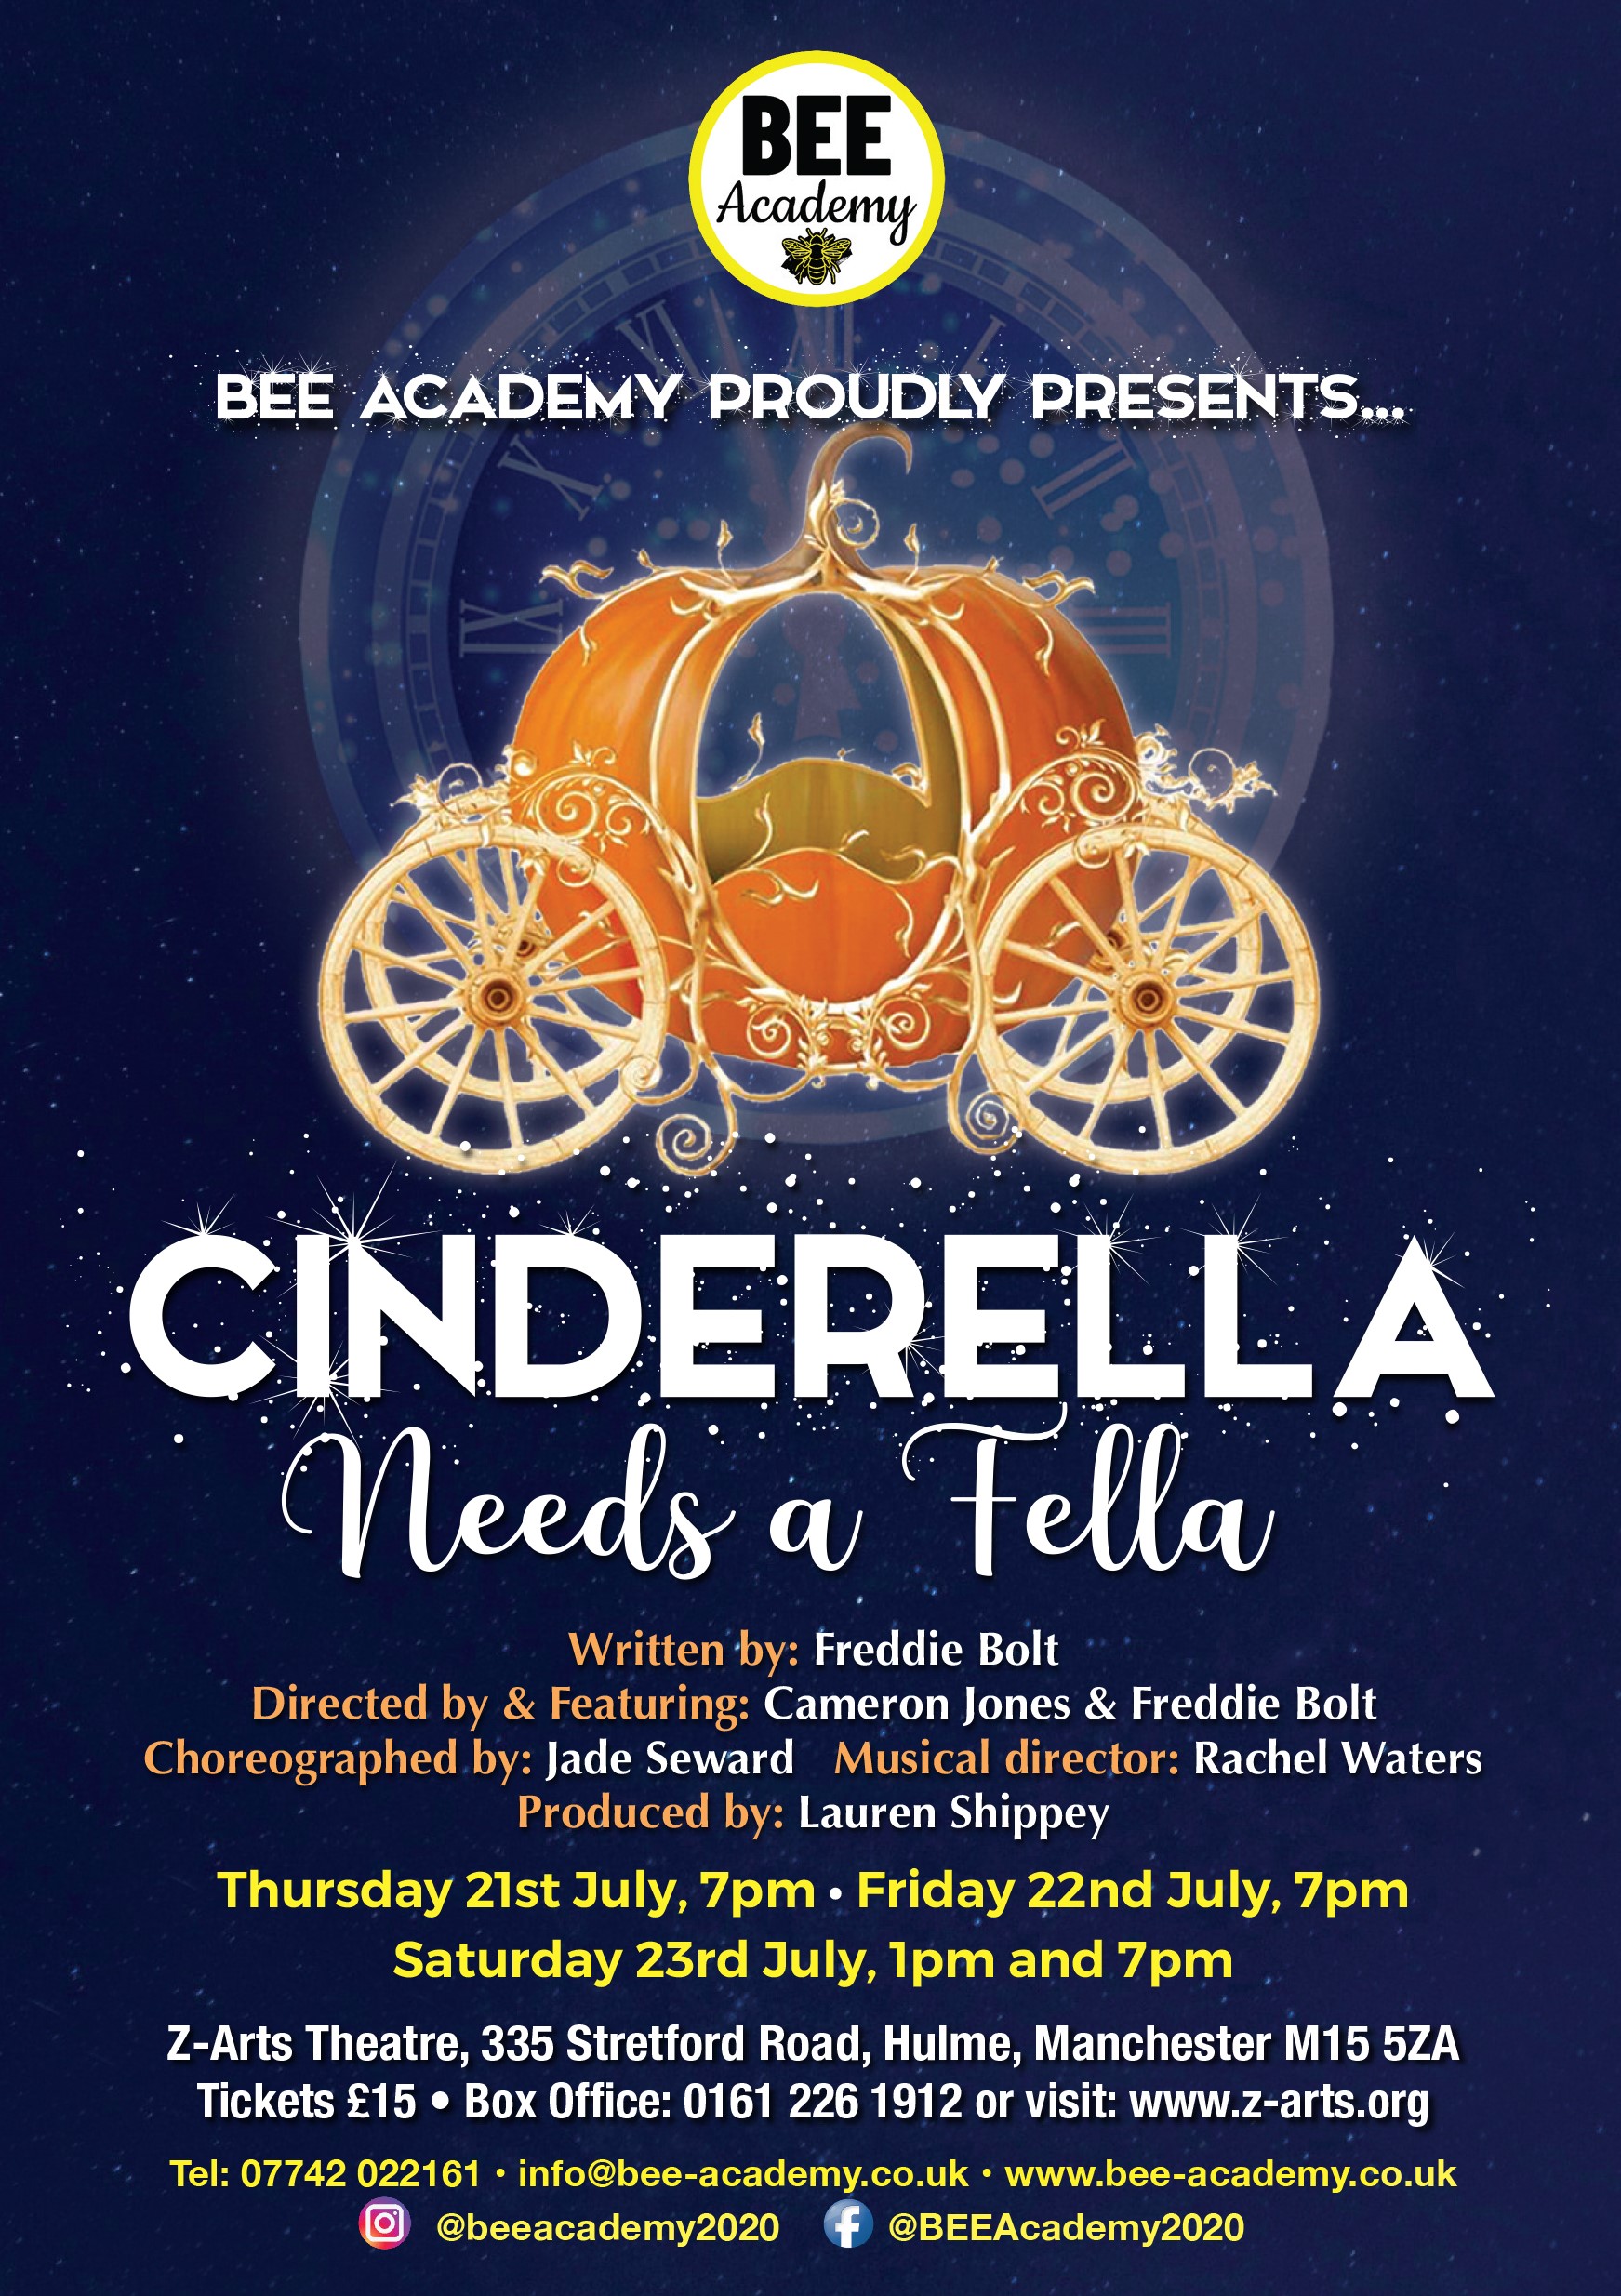 Cinderella needs a fella!